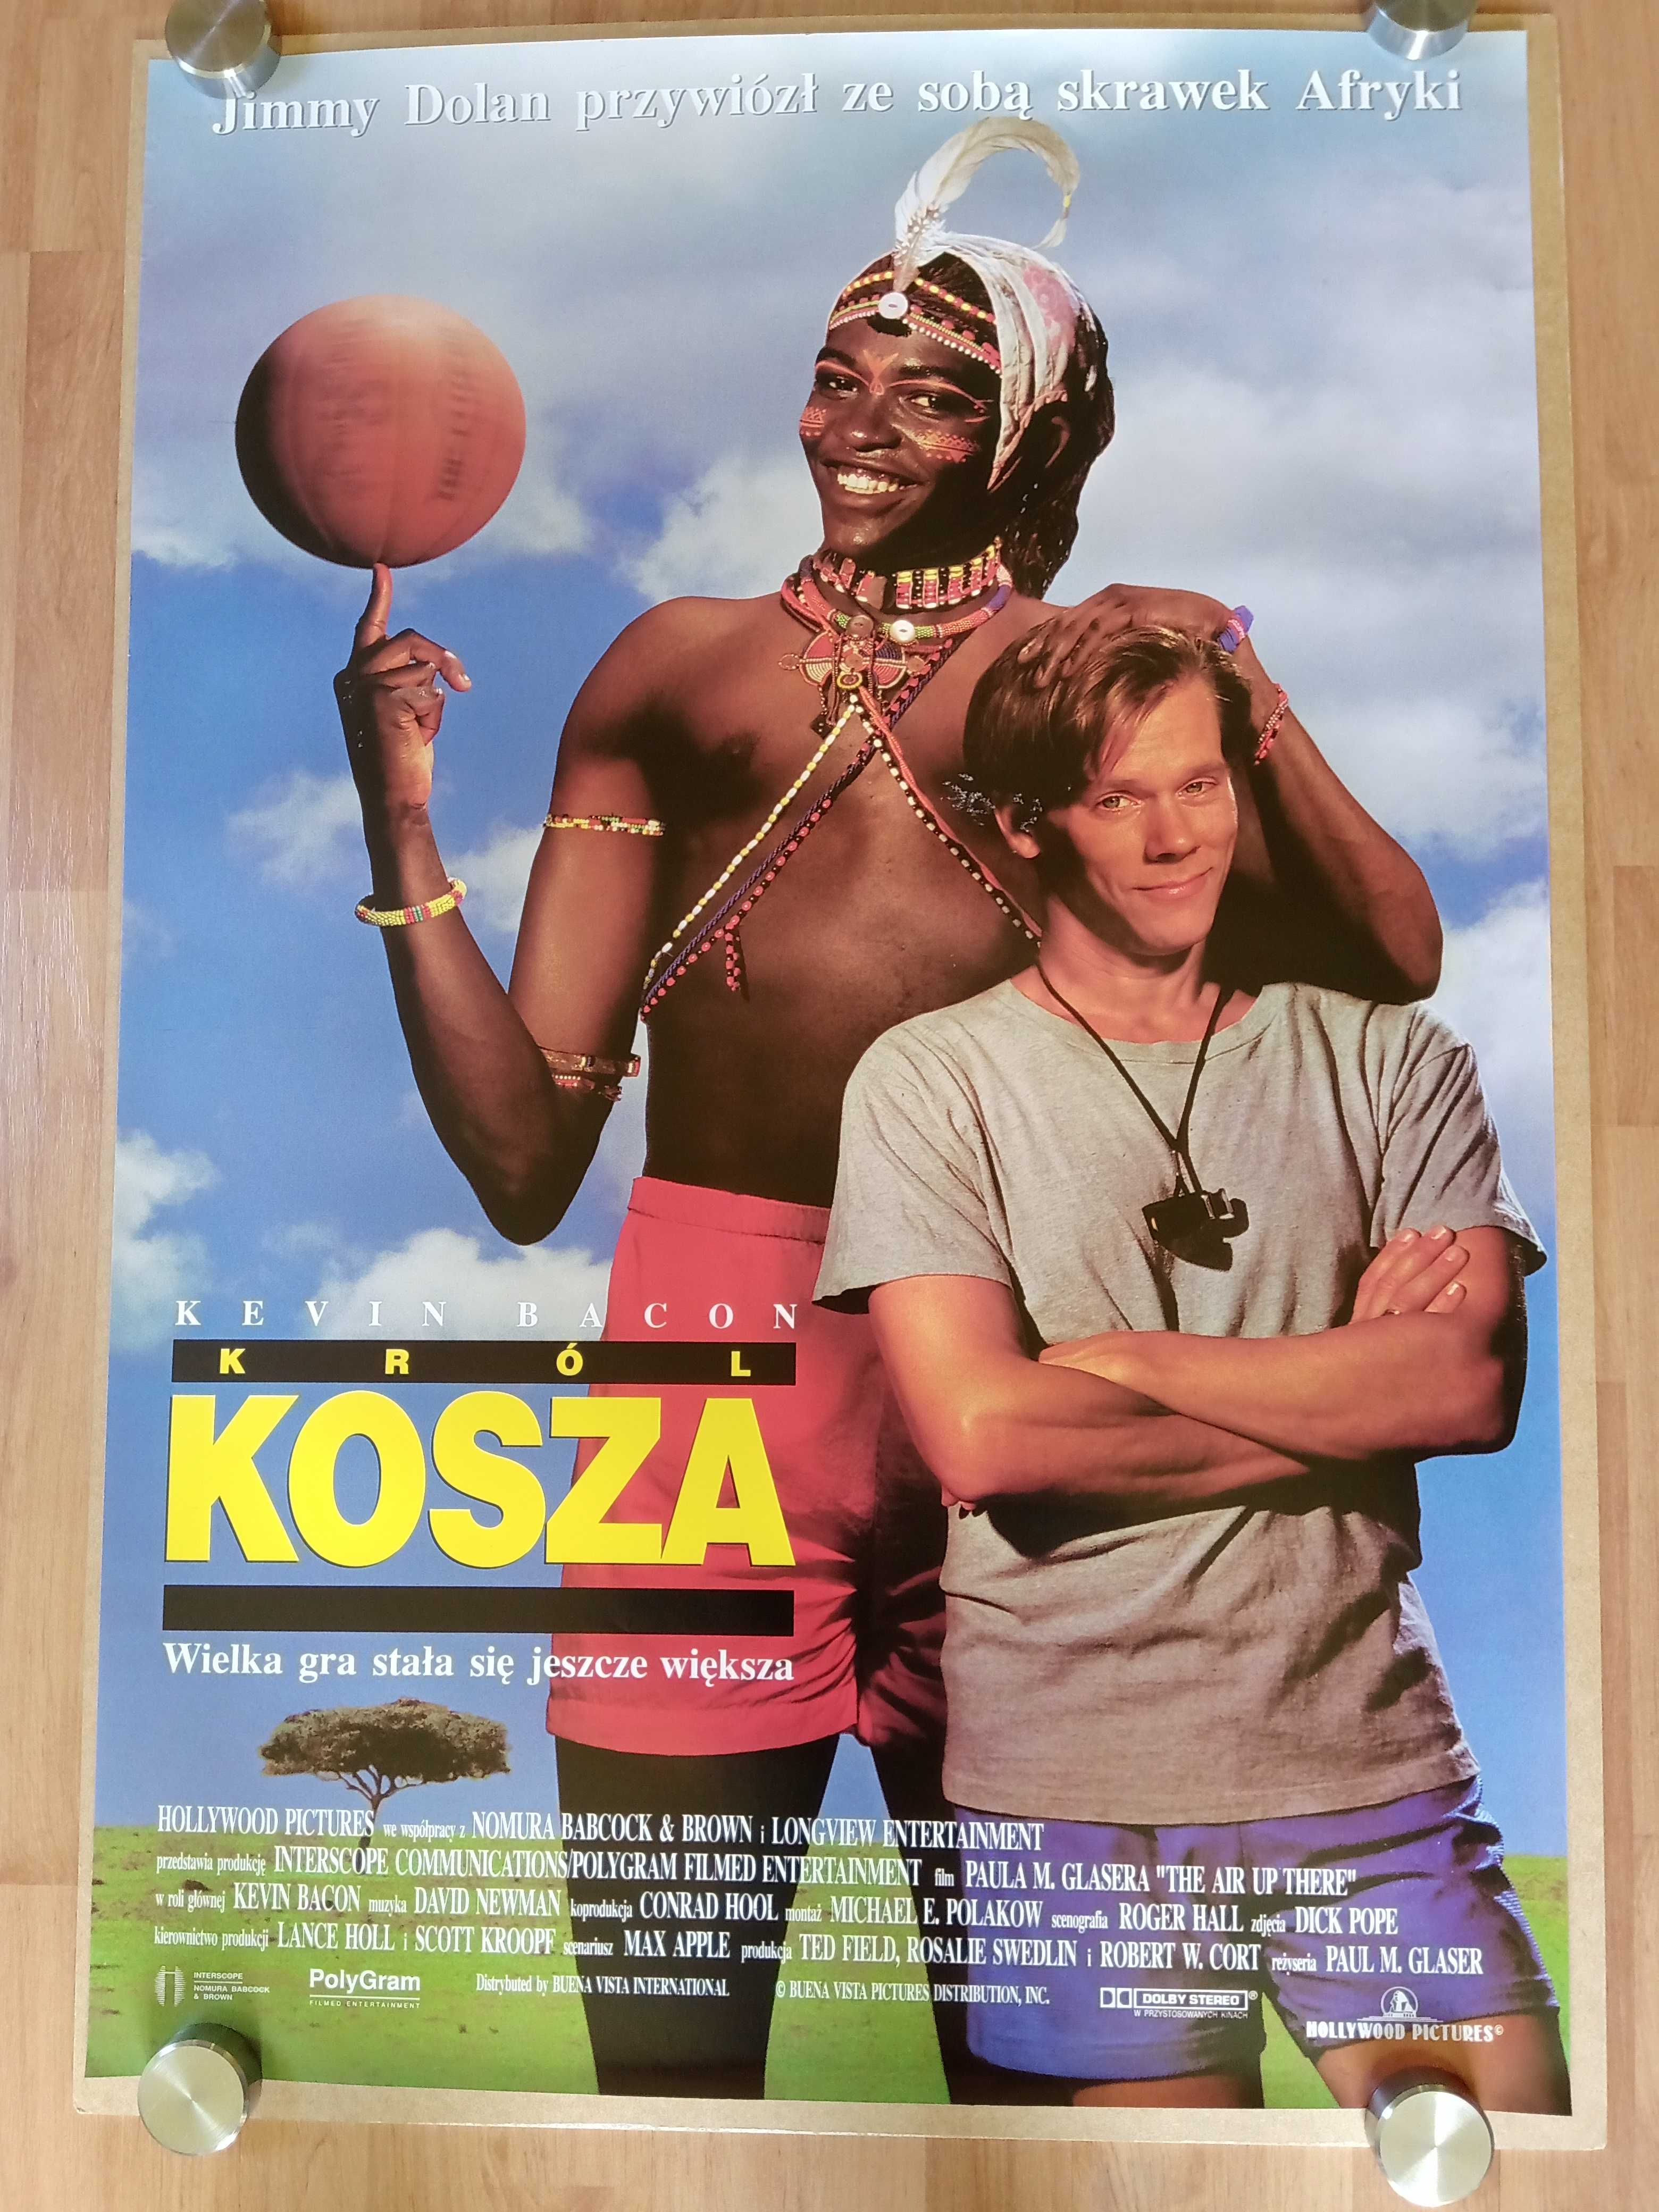 Plakat filmowy KRÓL KOSZA/Kevin Bacon/Oryginał z 1995 roku.